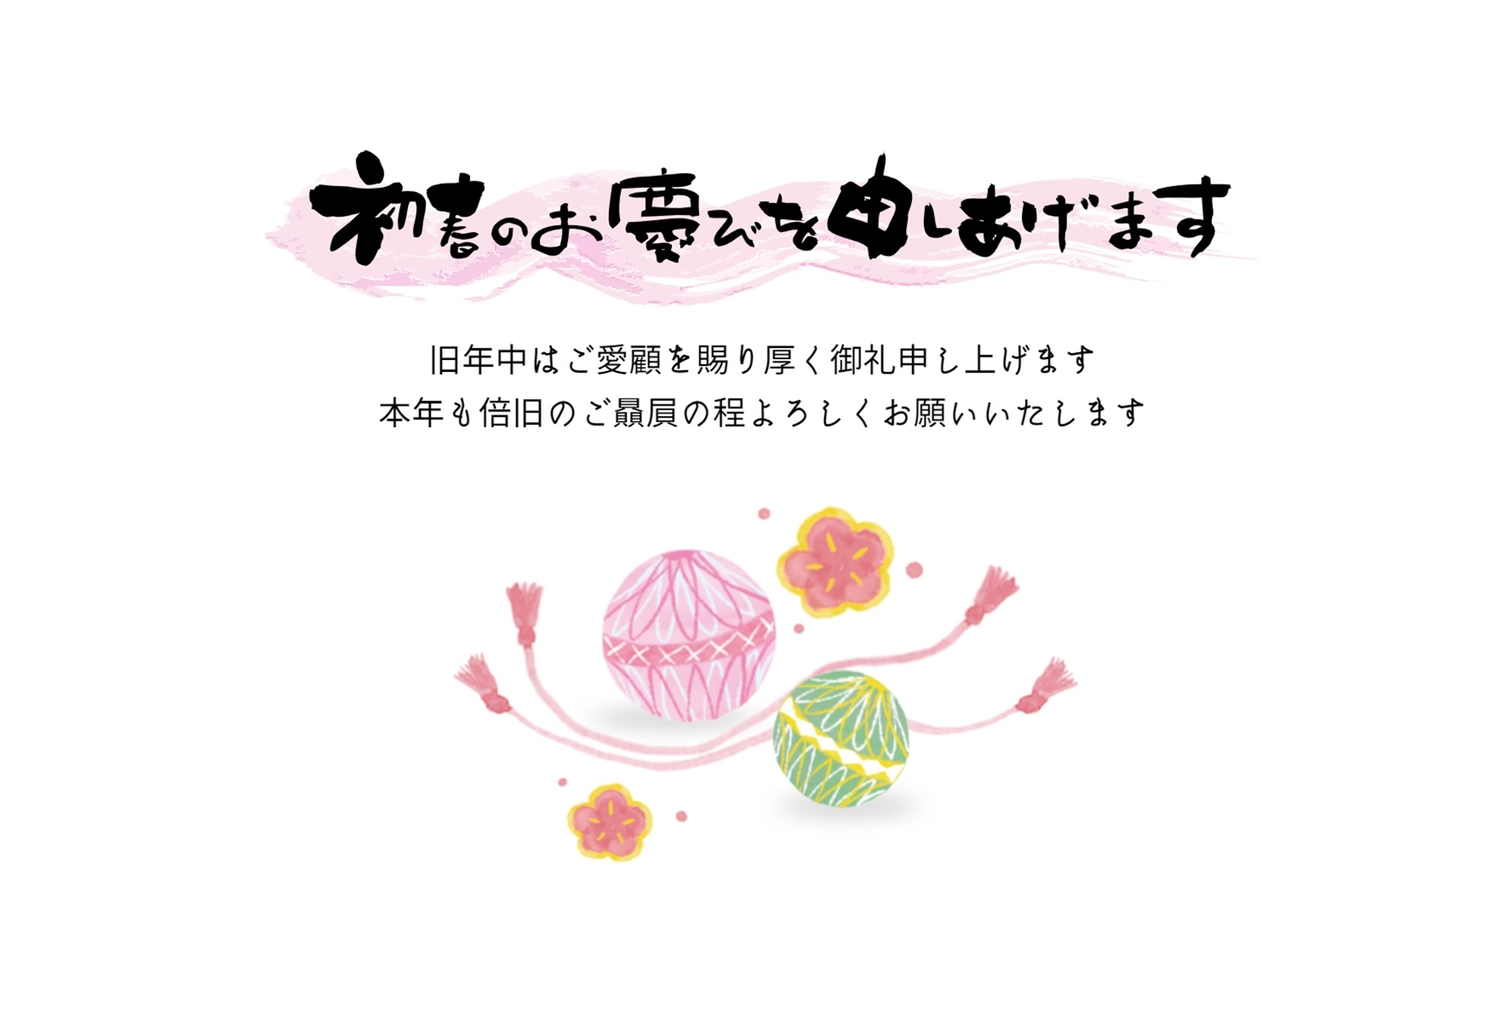 手鞠年賀状, White background, margin, traditional Japanese handball game, New Year Card template